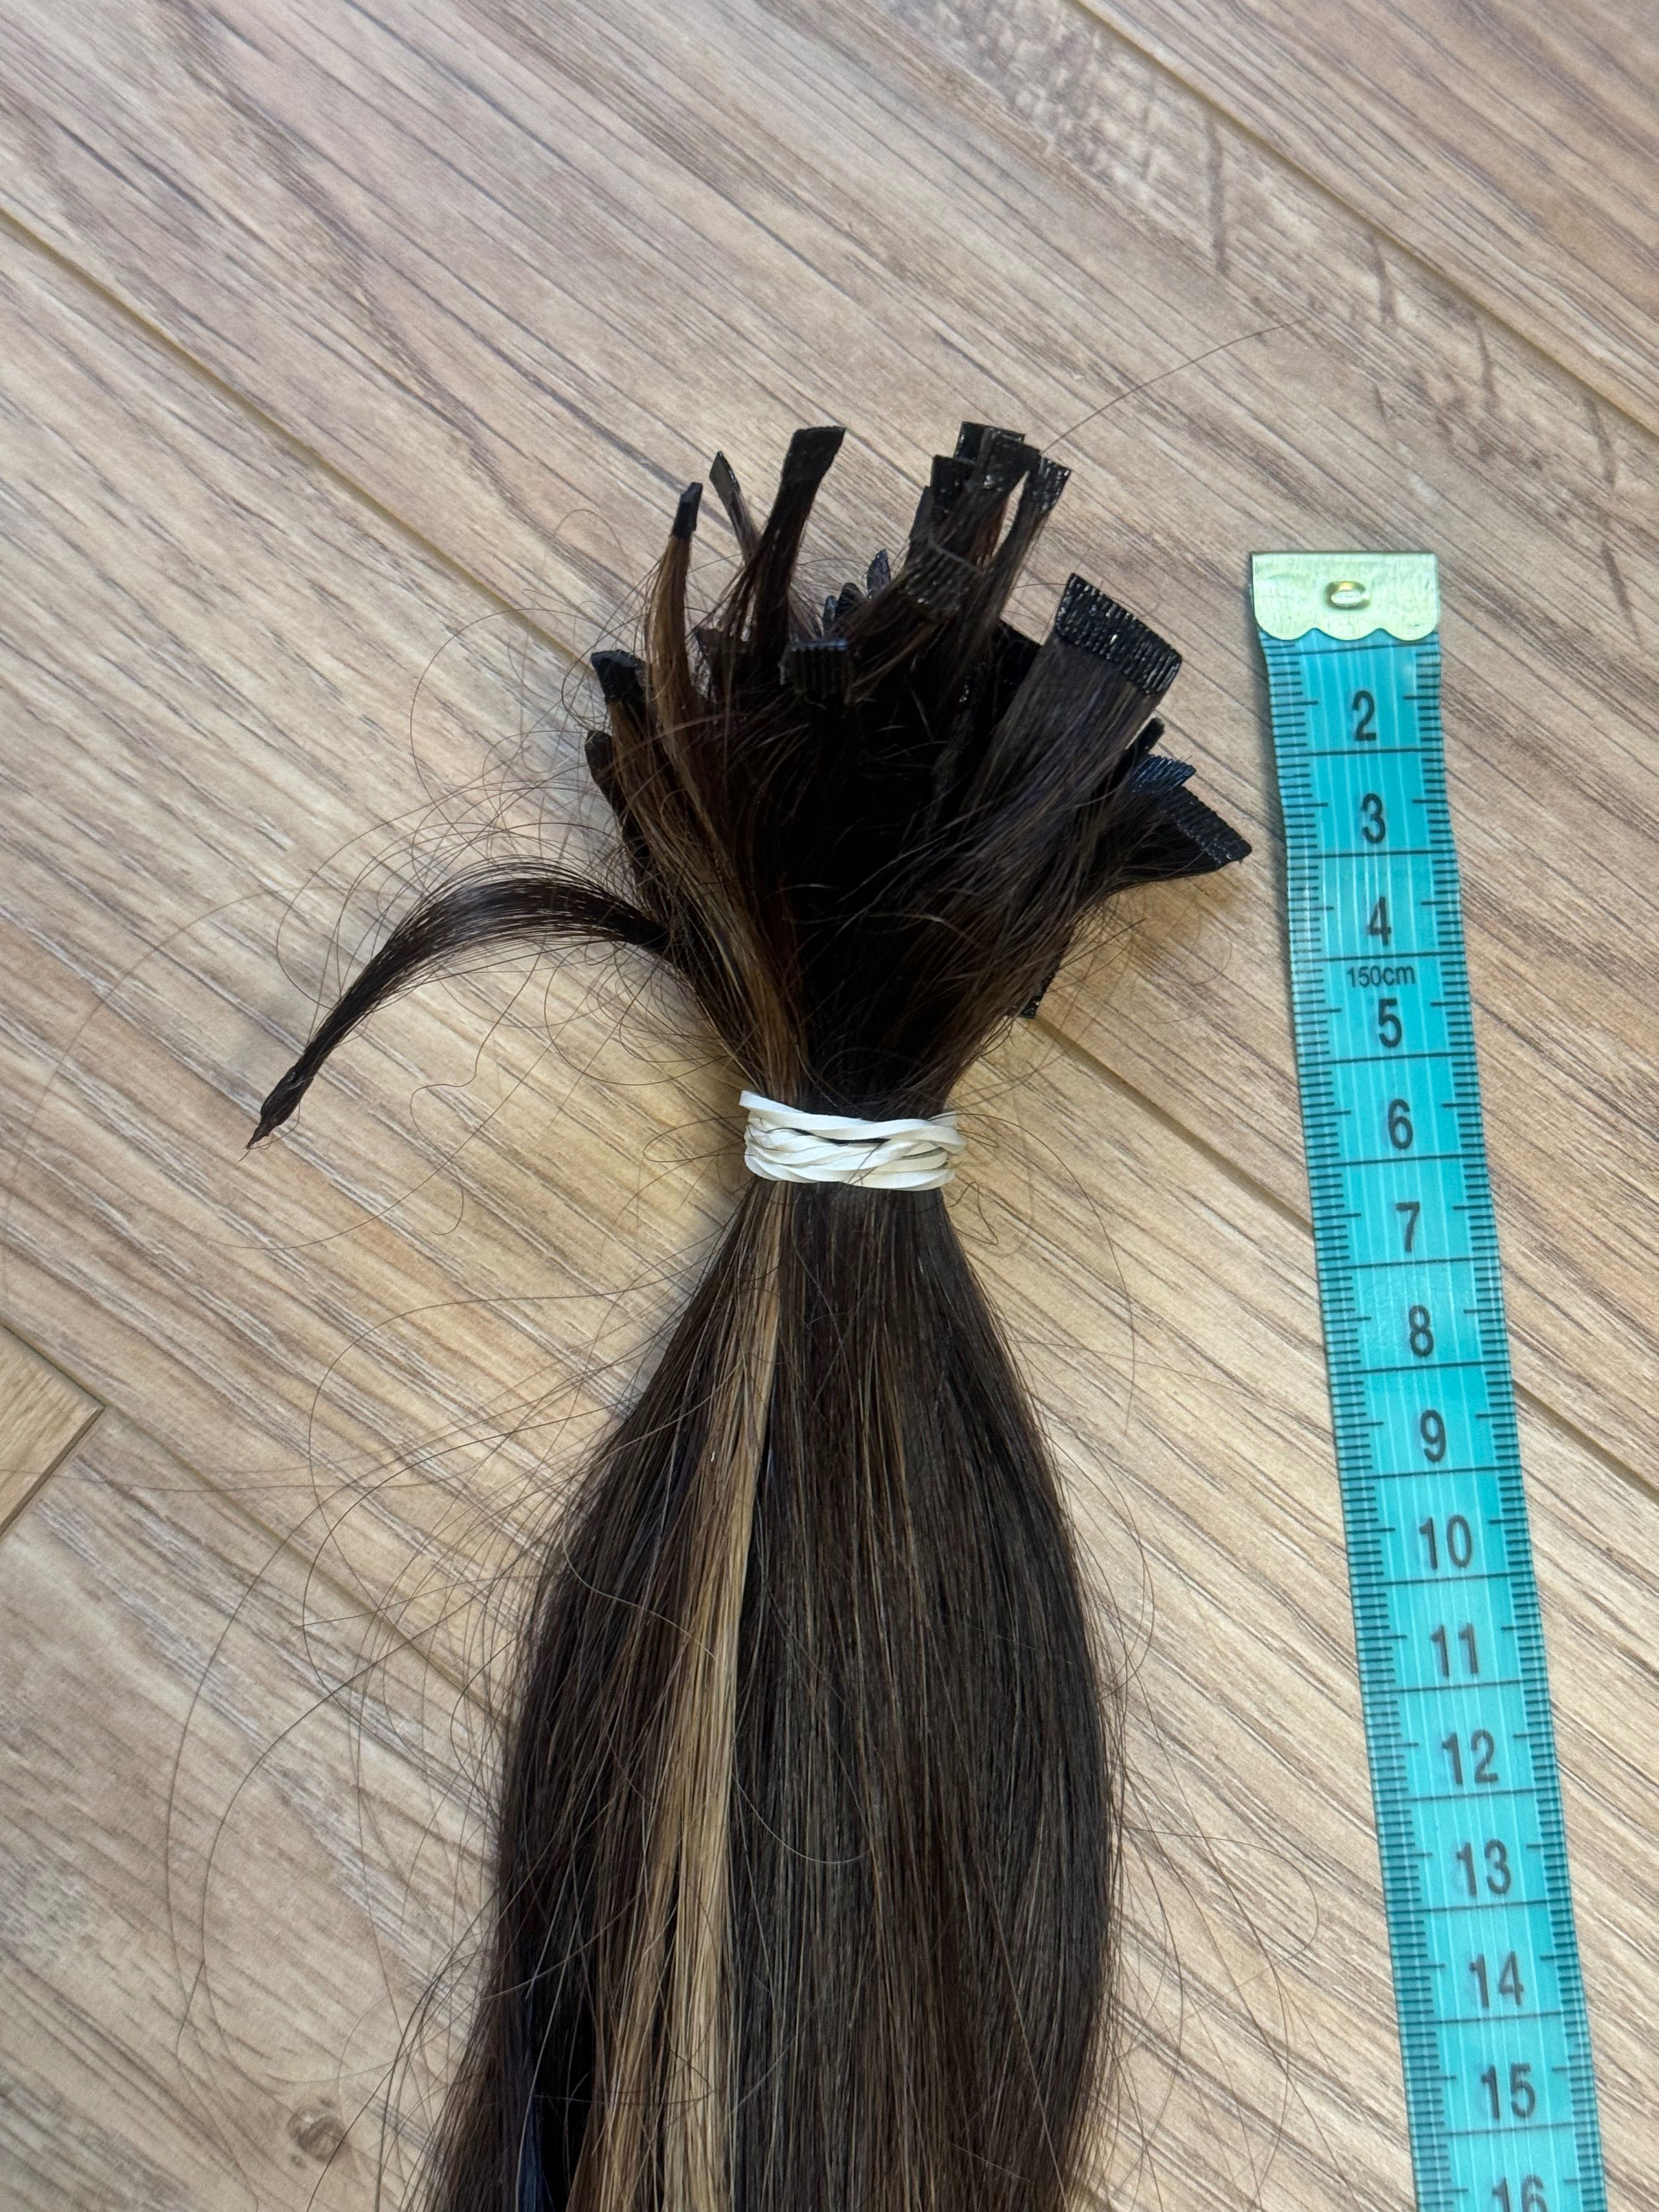 Włosy słowiańskie przygotowane pod metodę keratynową